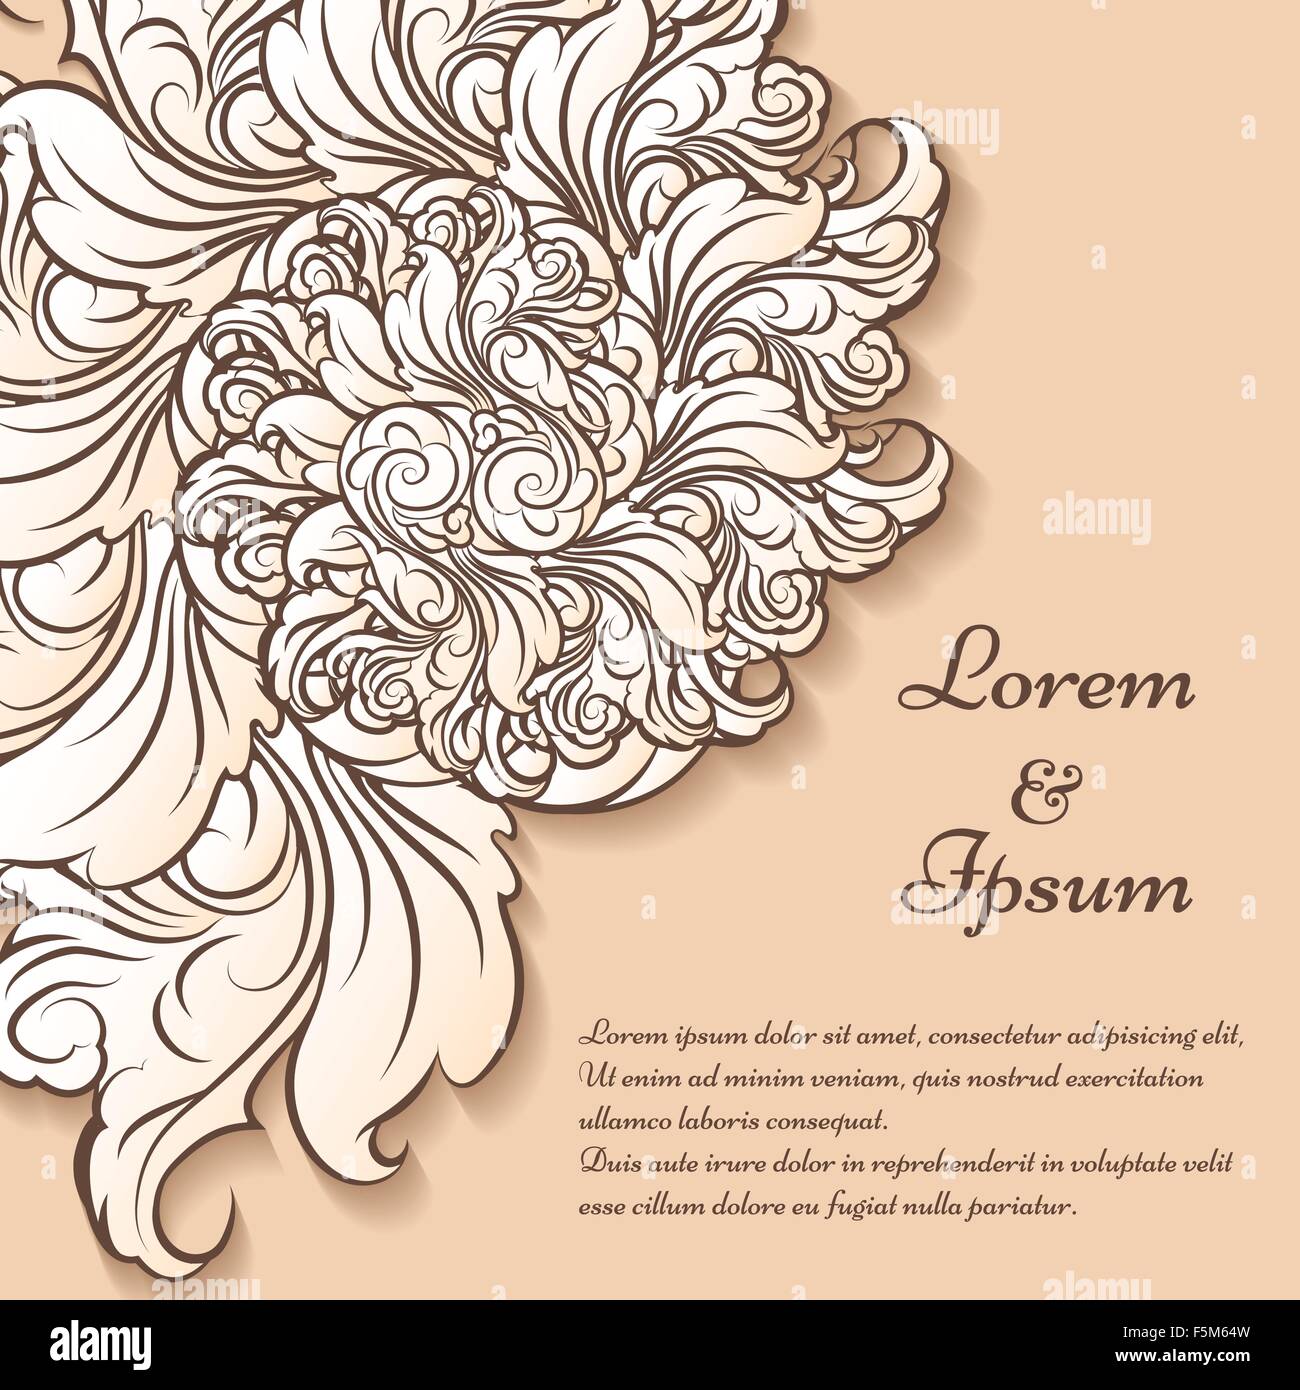 Scheda o modello di invito. Disegnata a mano con motivi floreali elementi decorativi e campioni di testo. Illustrazione Vettoriale